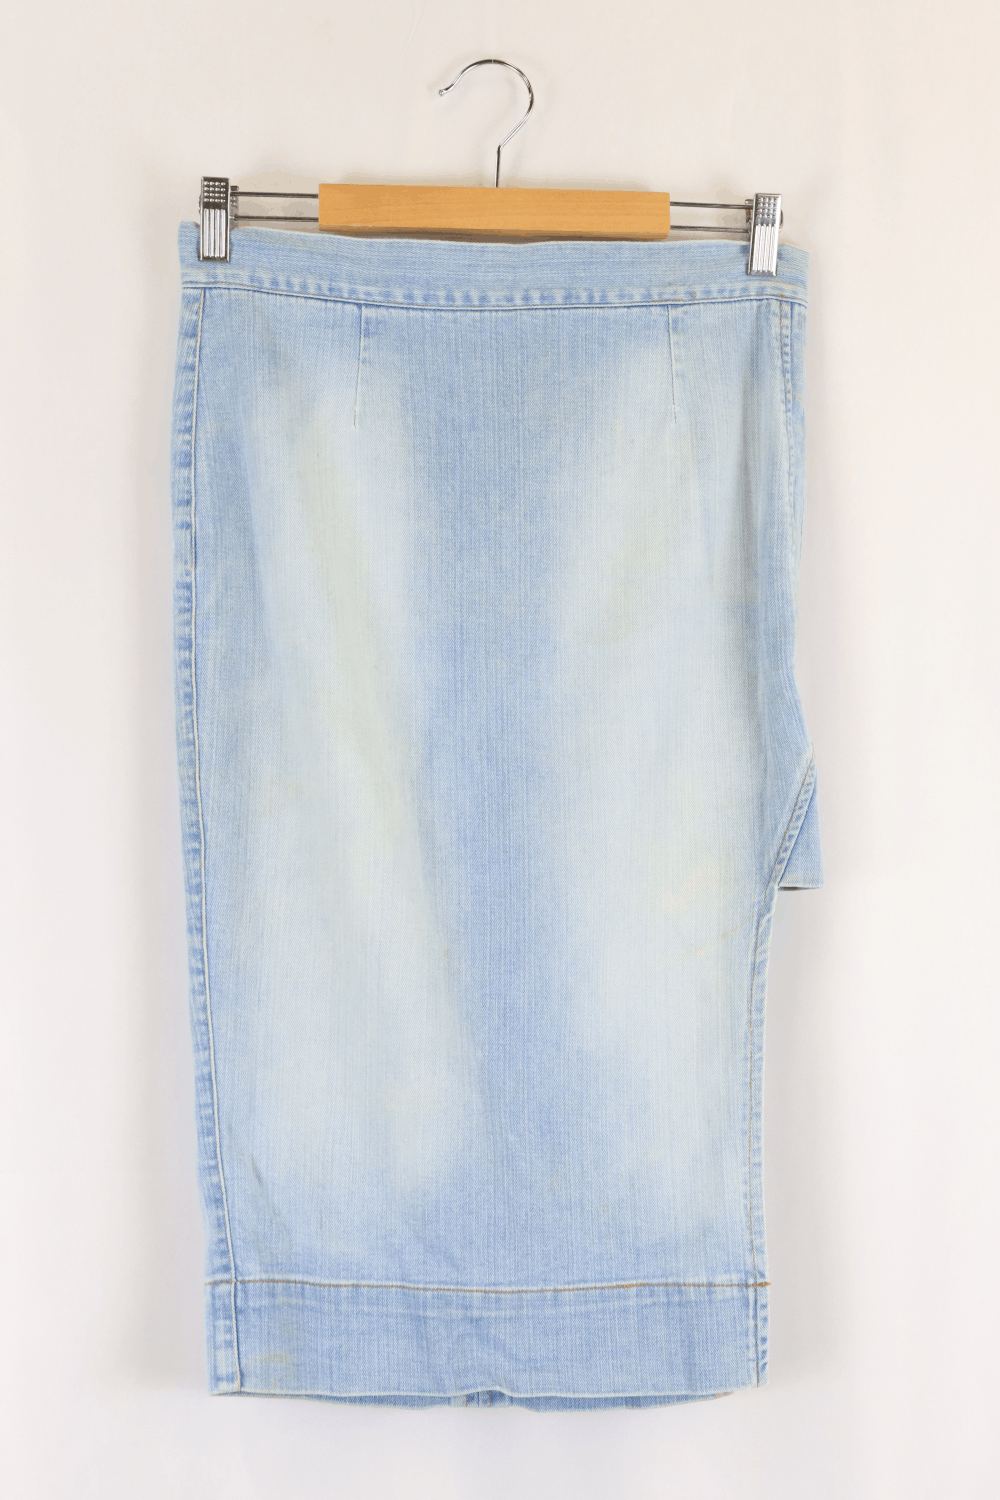 Kitz Blue Long Denim Skirt S